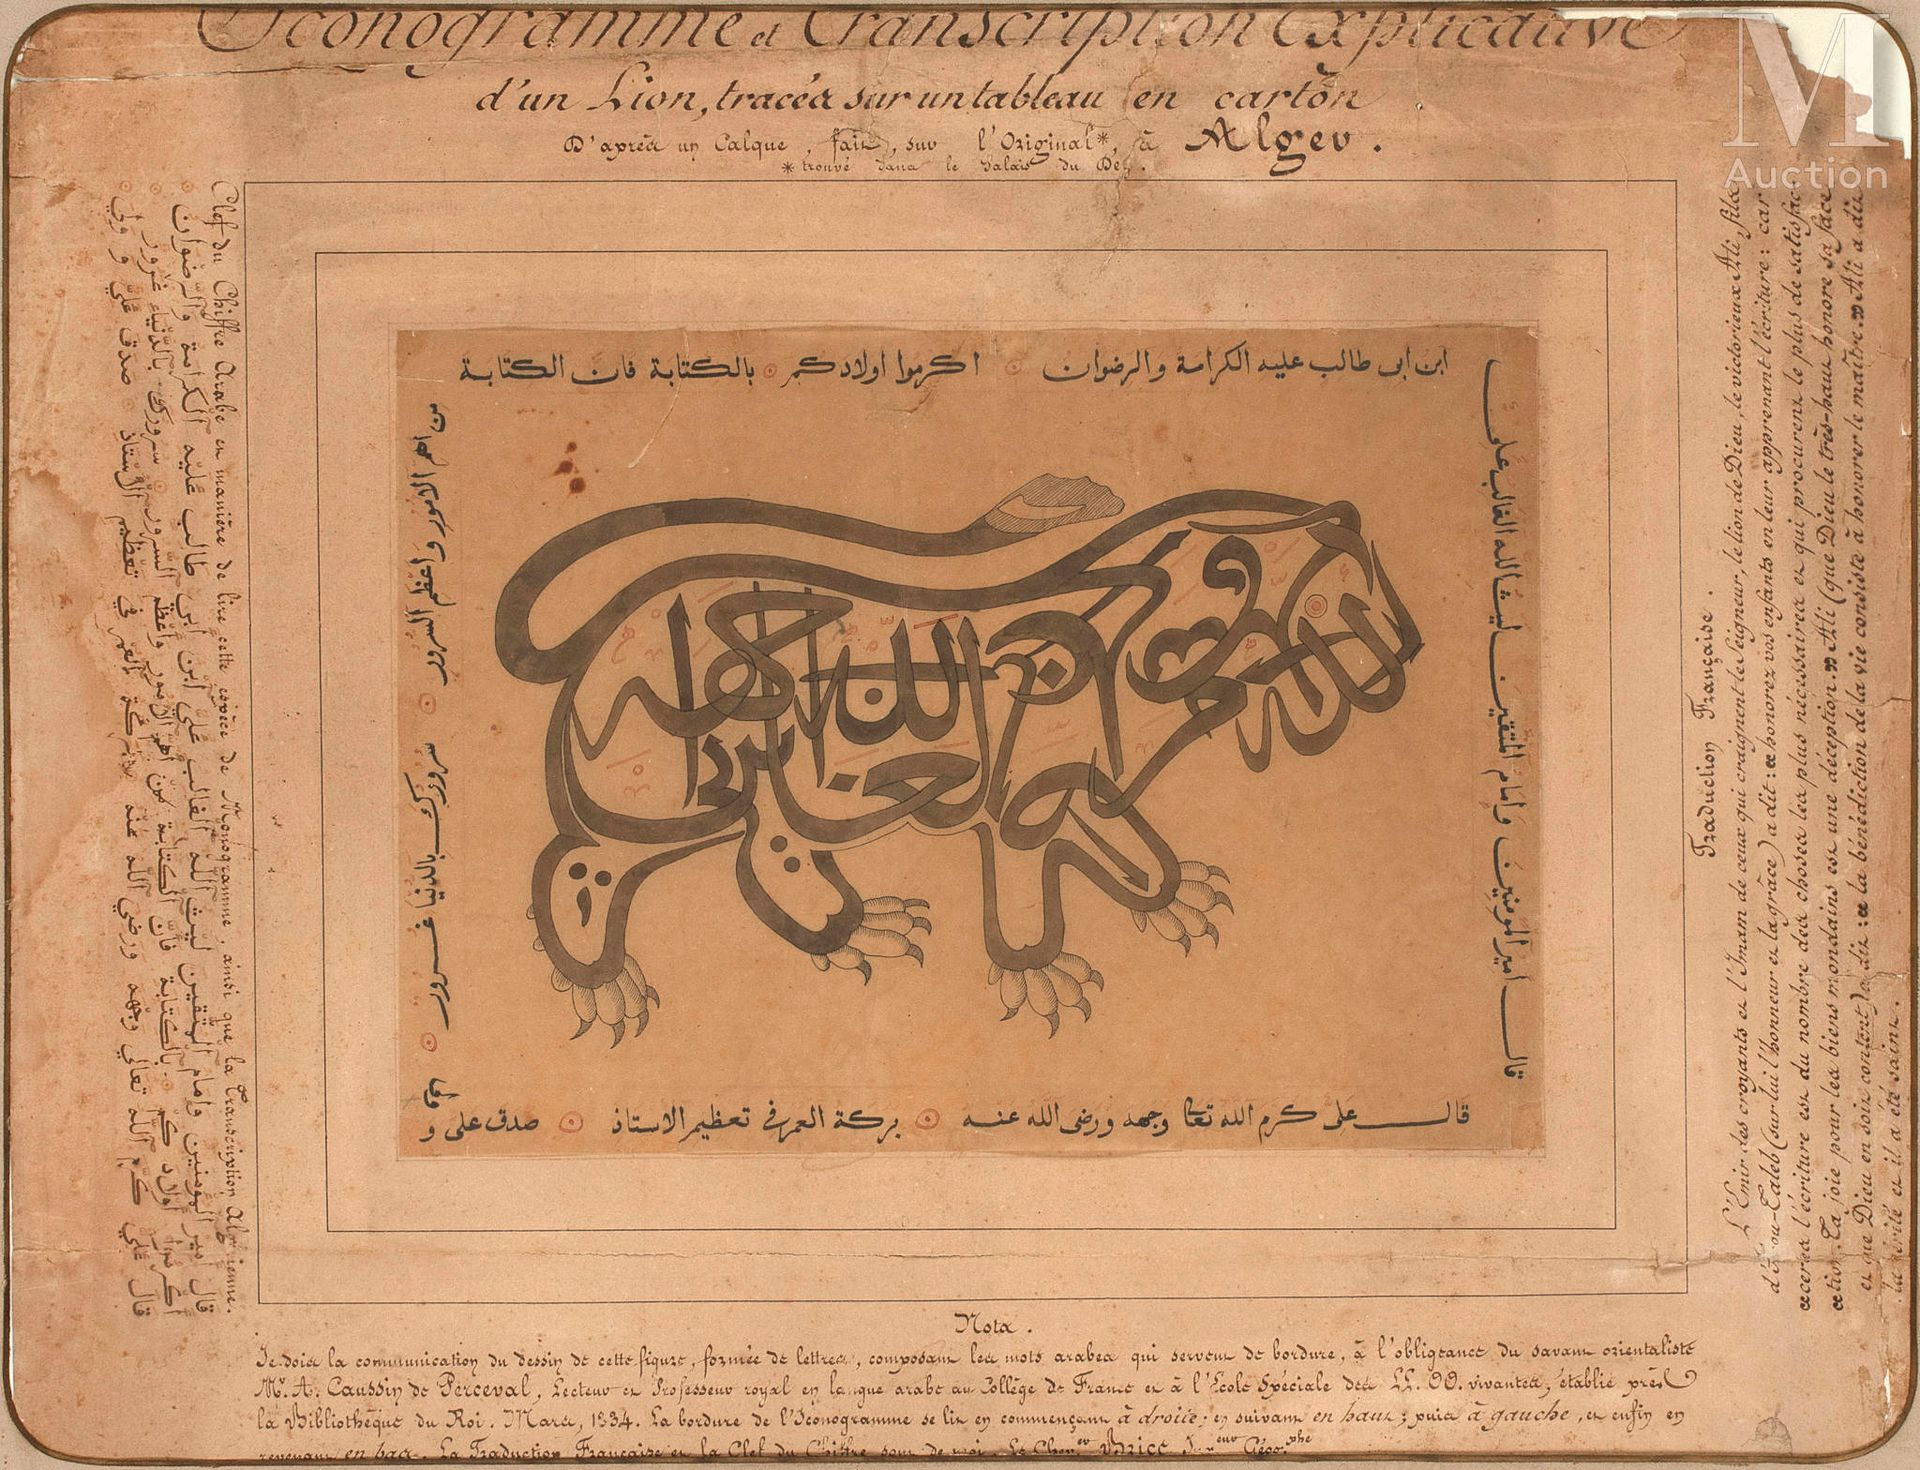 Calligraphie zoomorphe Algeria, XIX secolo
Al centro, un leone disegnato in lett&hellip;